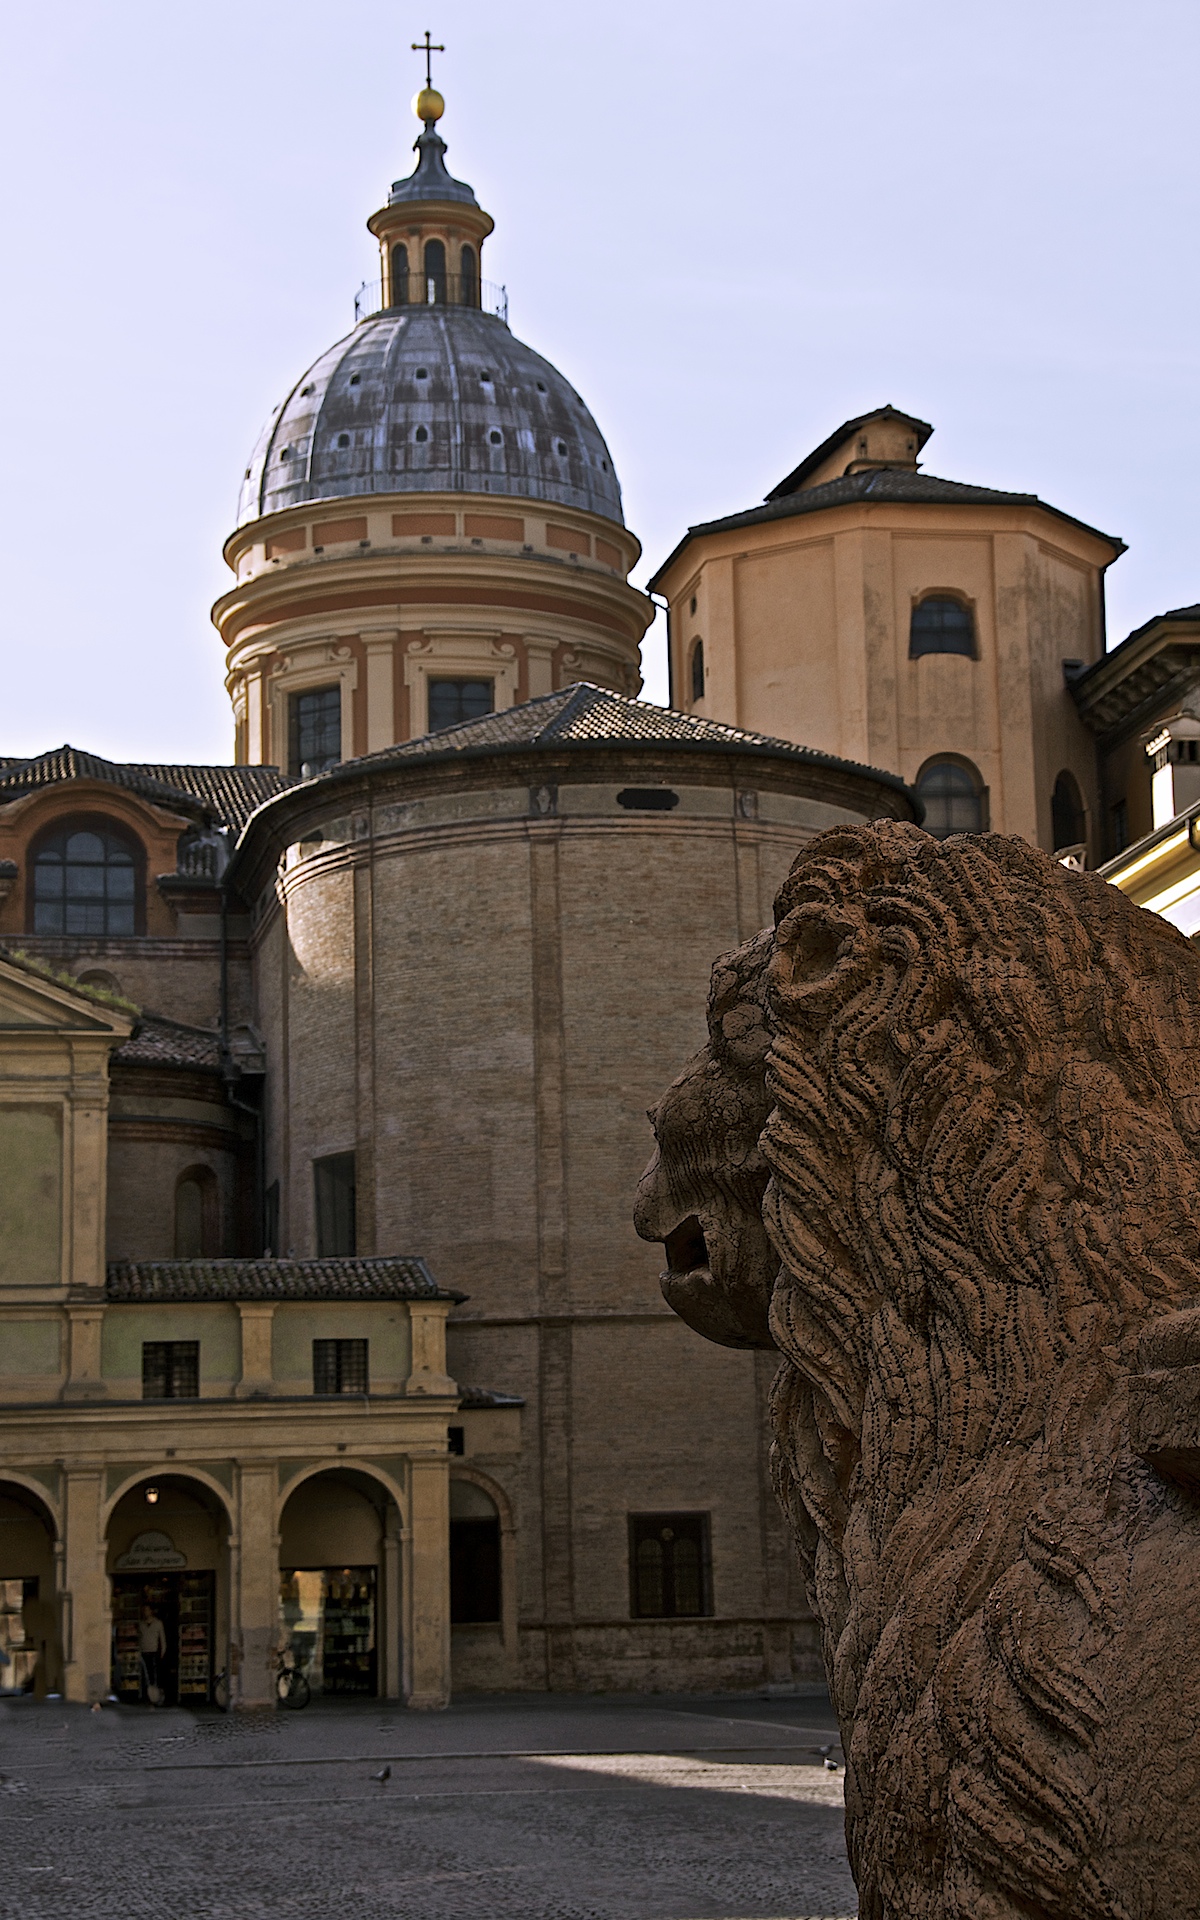 foto: https://upload.wikimedia.org/wikipedia/commons/d/d0/Piazza_San_Prospero_o_Piazza_dei_Leoni.jpg